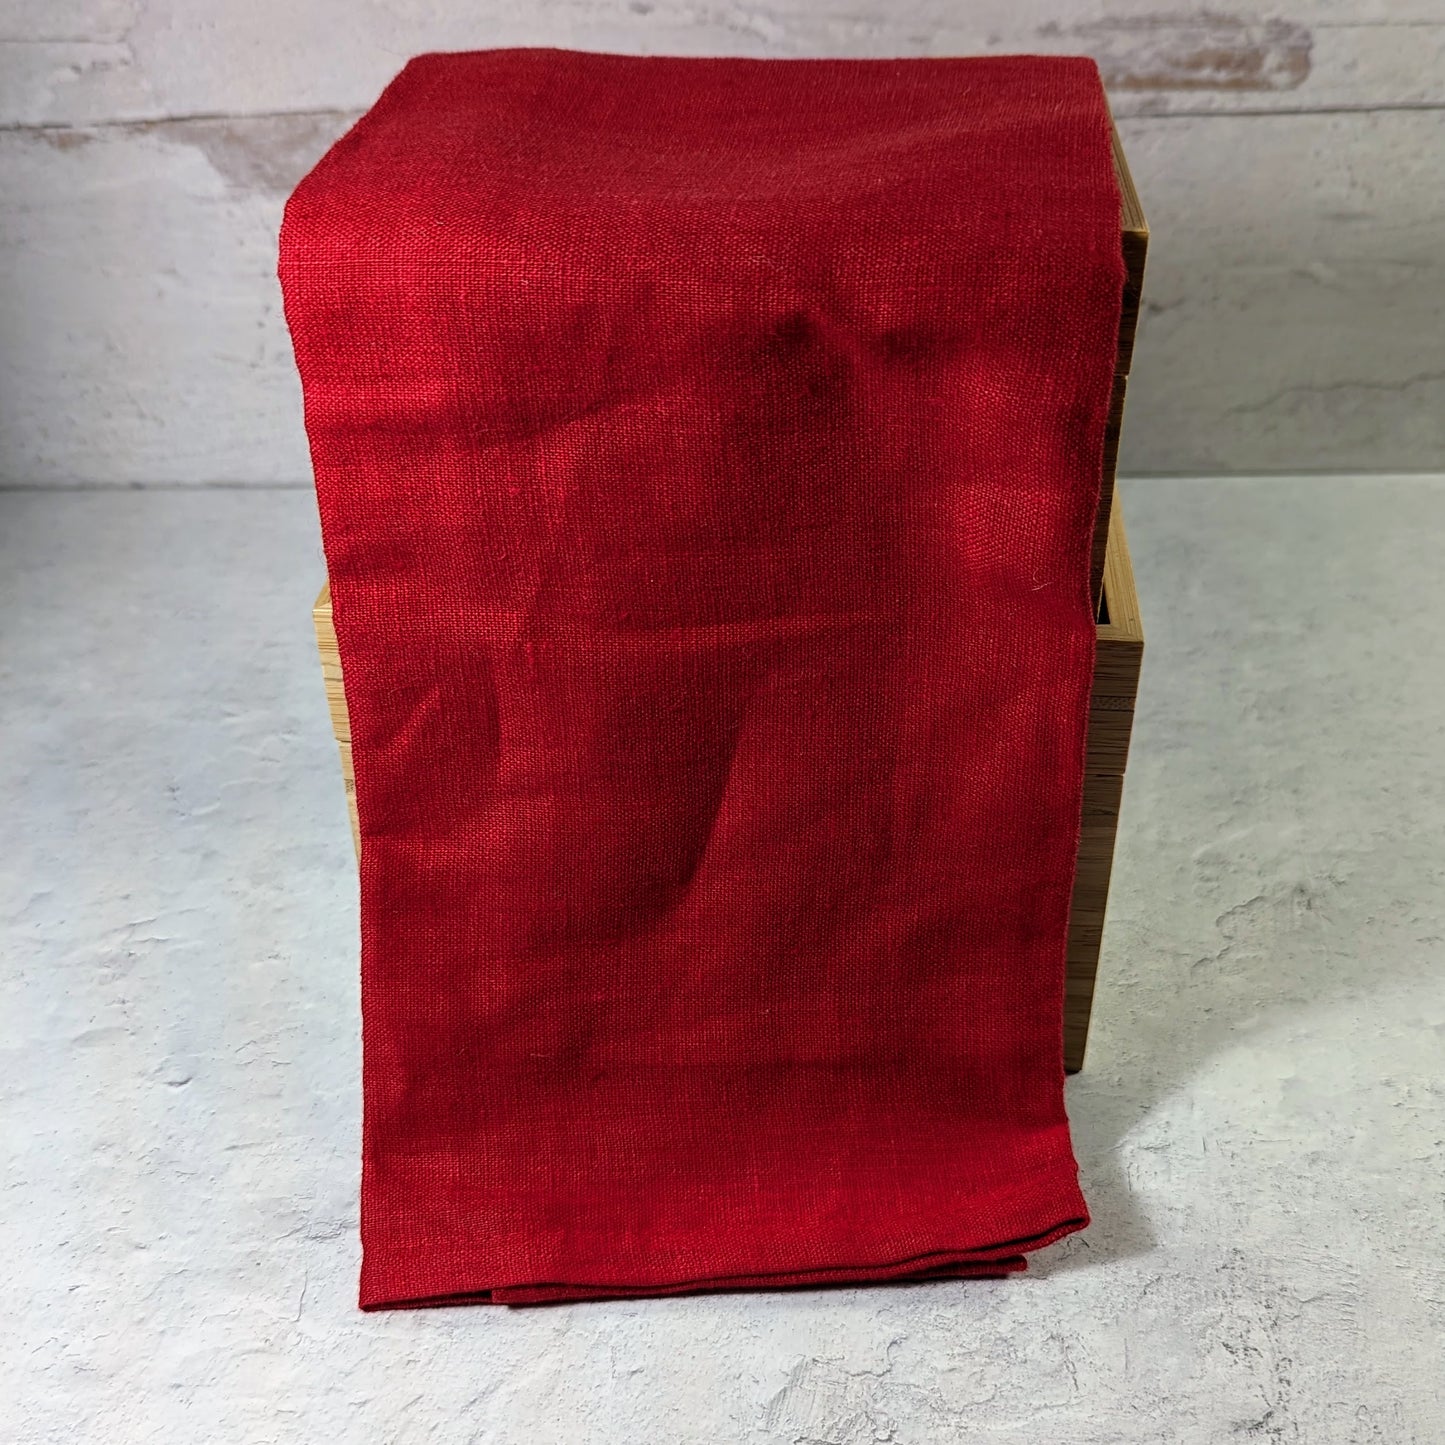 Cherry red 100% linen kitchen towel